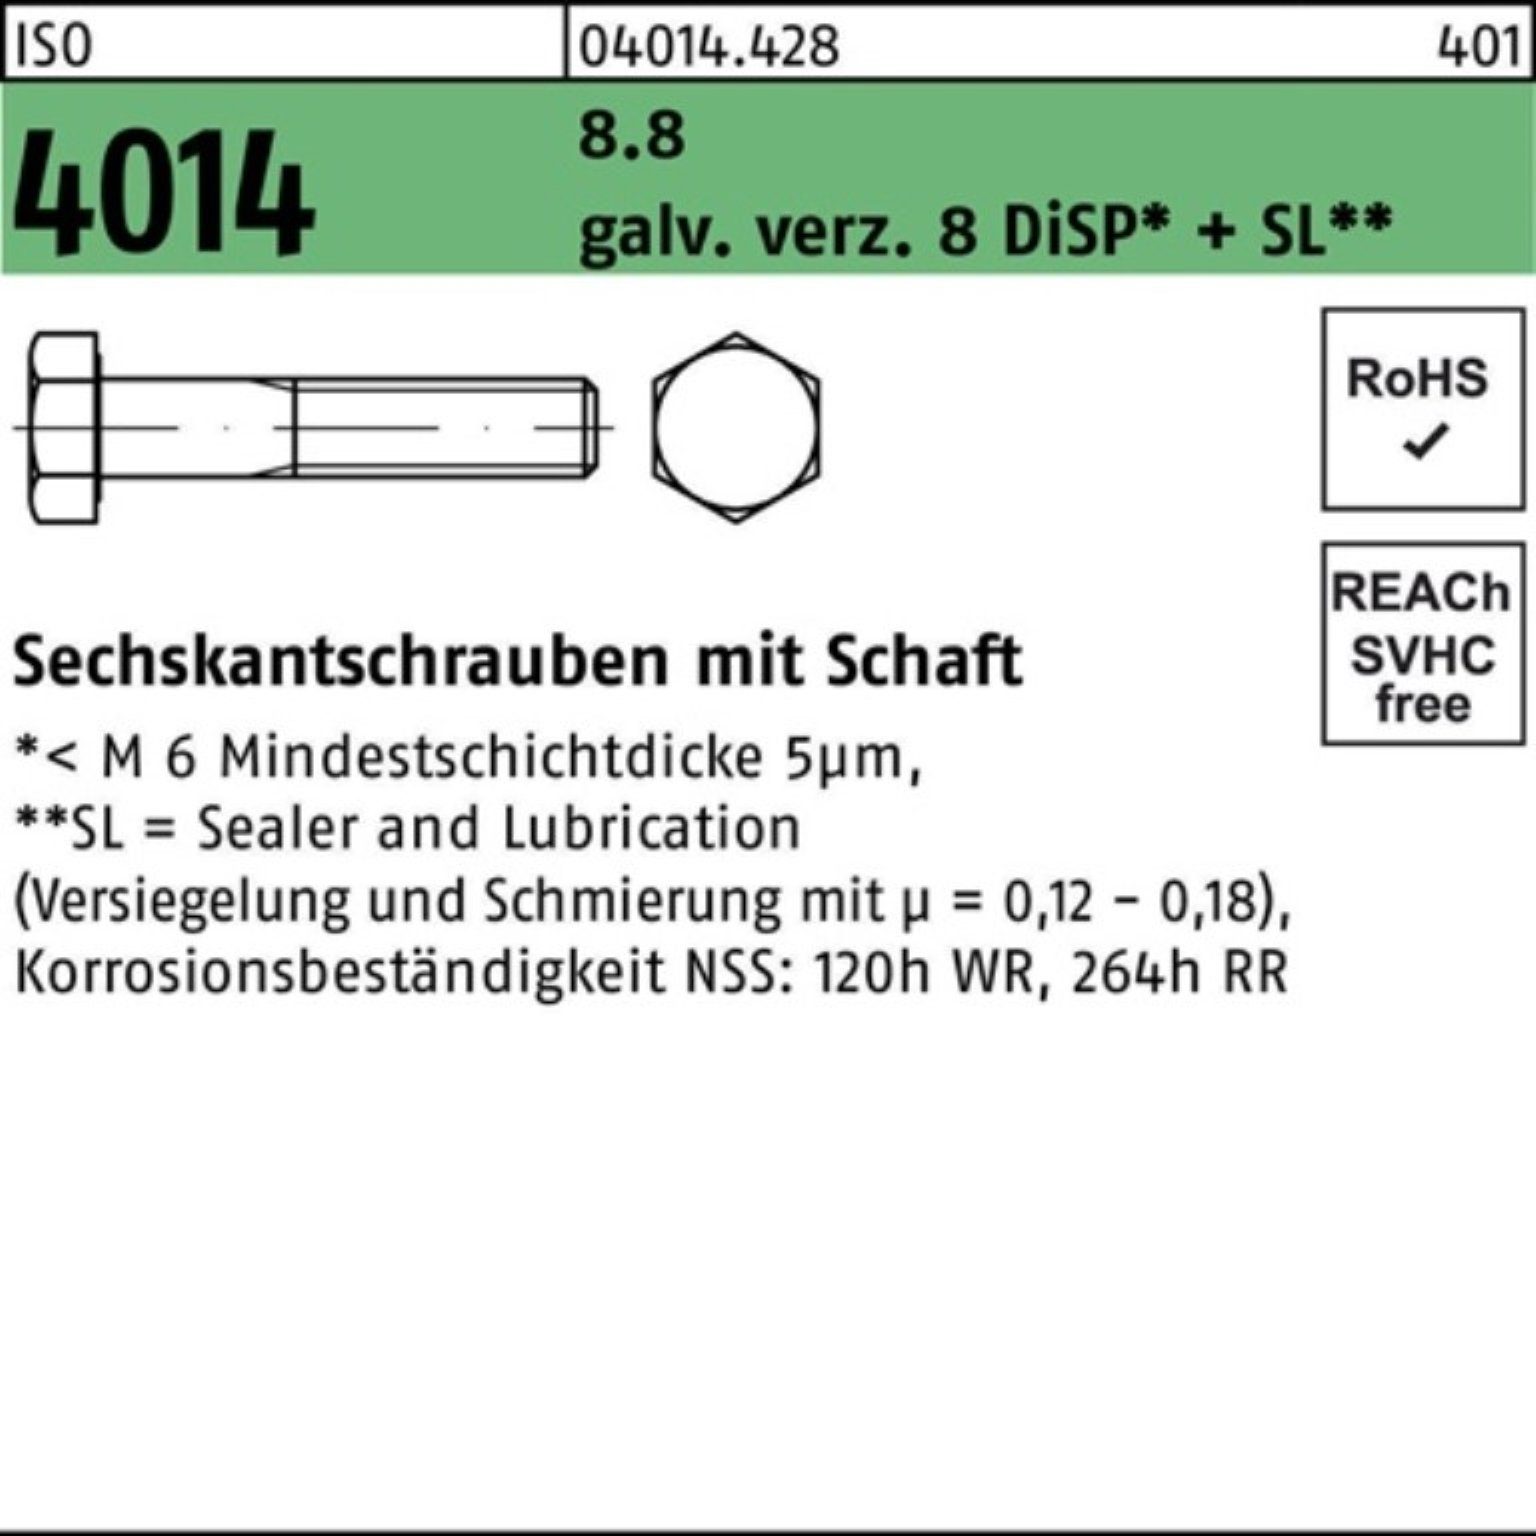 8 Sechskantschraube 8.8 Schaft 100er Pack Bufab 4014 ISO galv.verz. Sechskantschraube M12x200